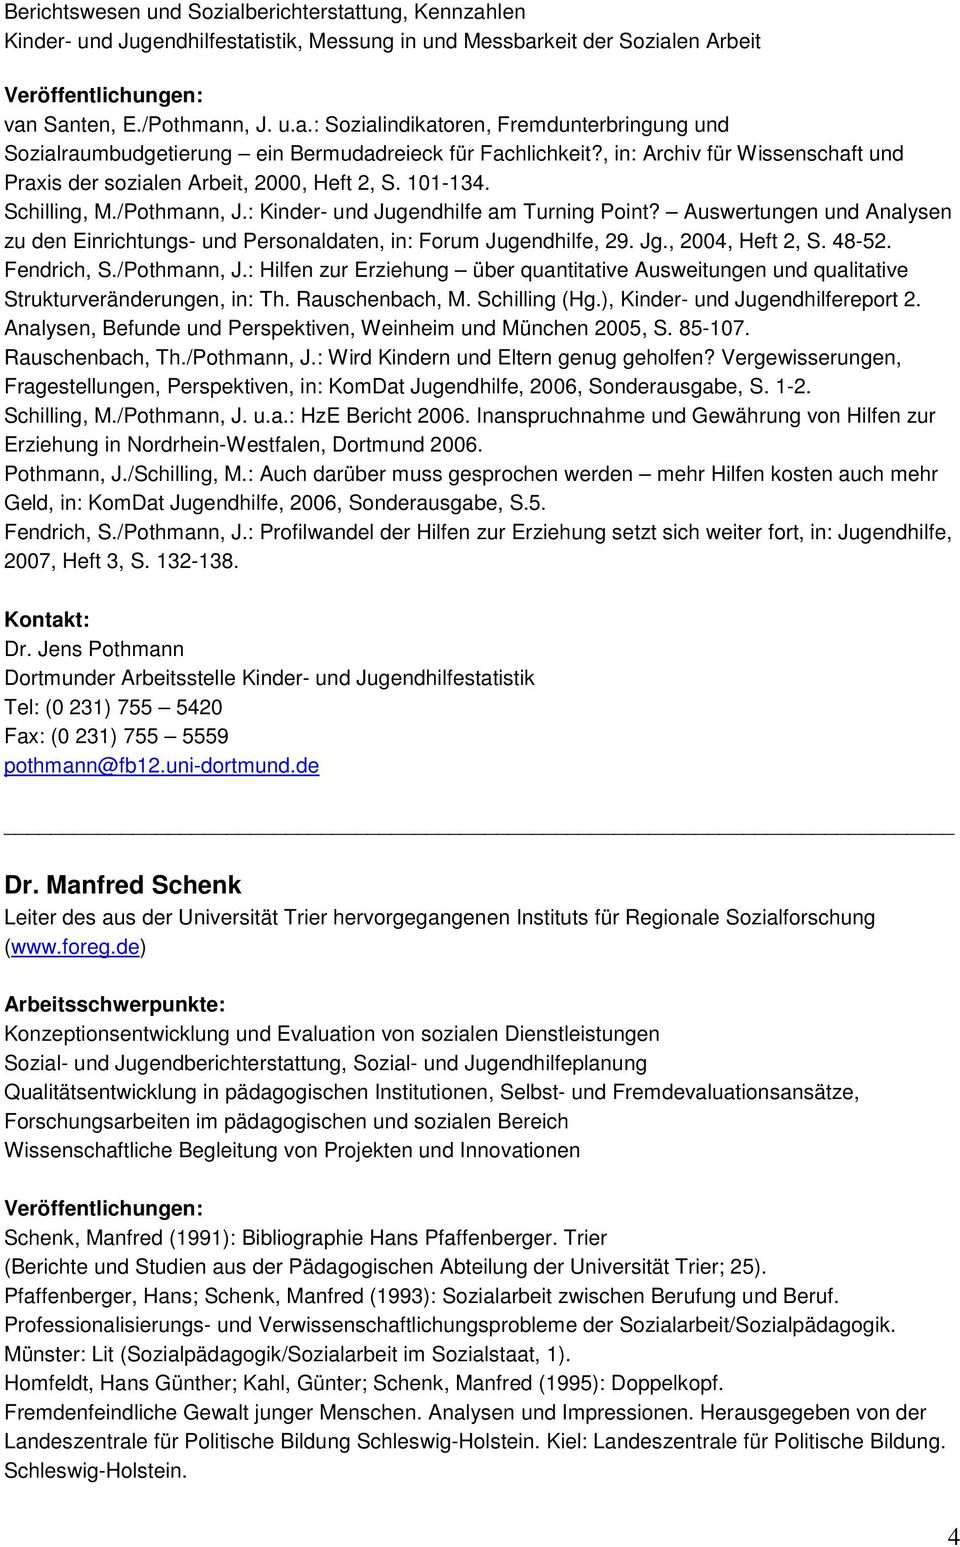 Auswertungen und Analysen zu den Einrichtungs- und Personaldaten, in: Forum Jugendhilfe, 29. Jg., 2004, Heft 2, S. 48-52. Fendrich, S./Pothmann, J.